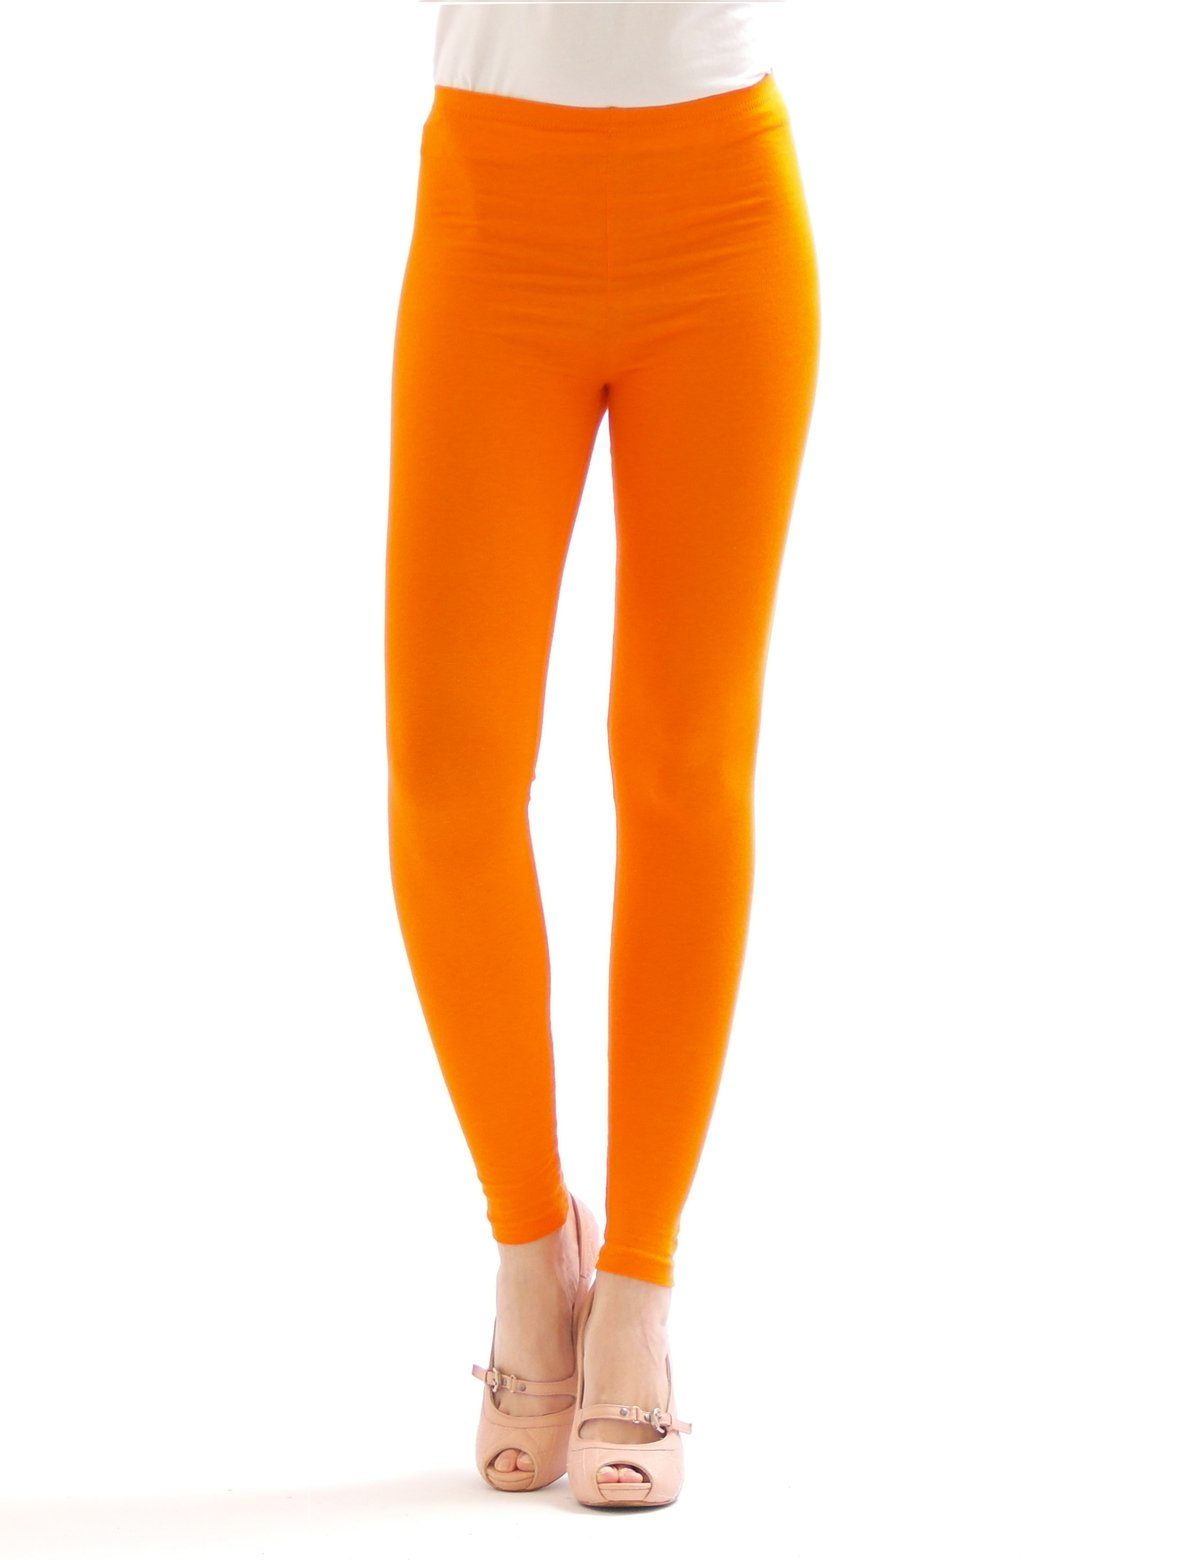 SYS Leggings Damen lange Hauteng Baumwolle orange lang Wäsche Leggings Hose